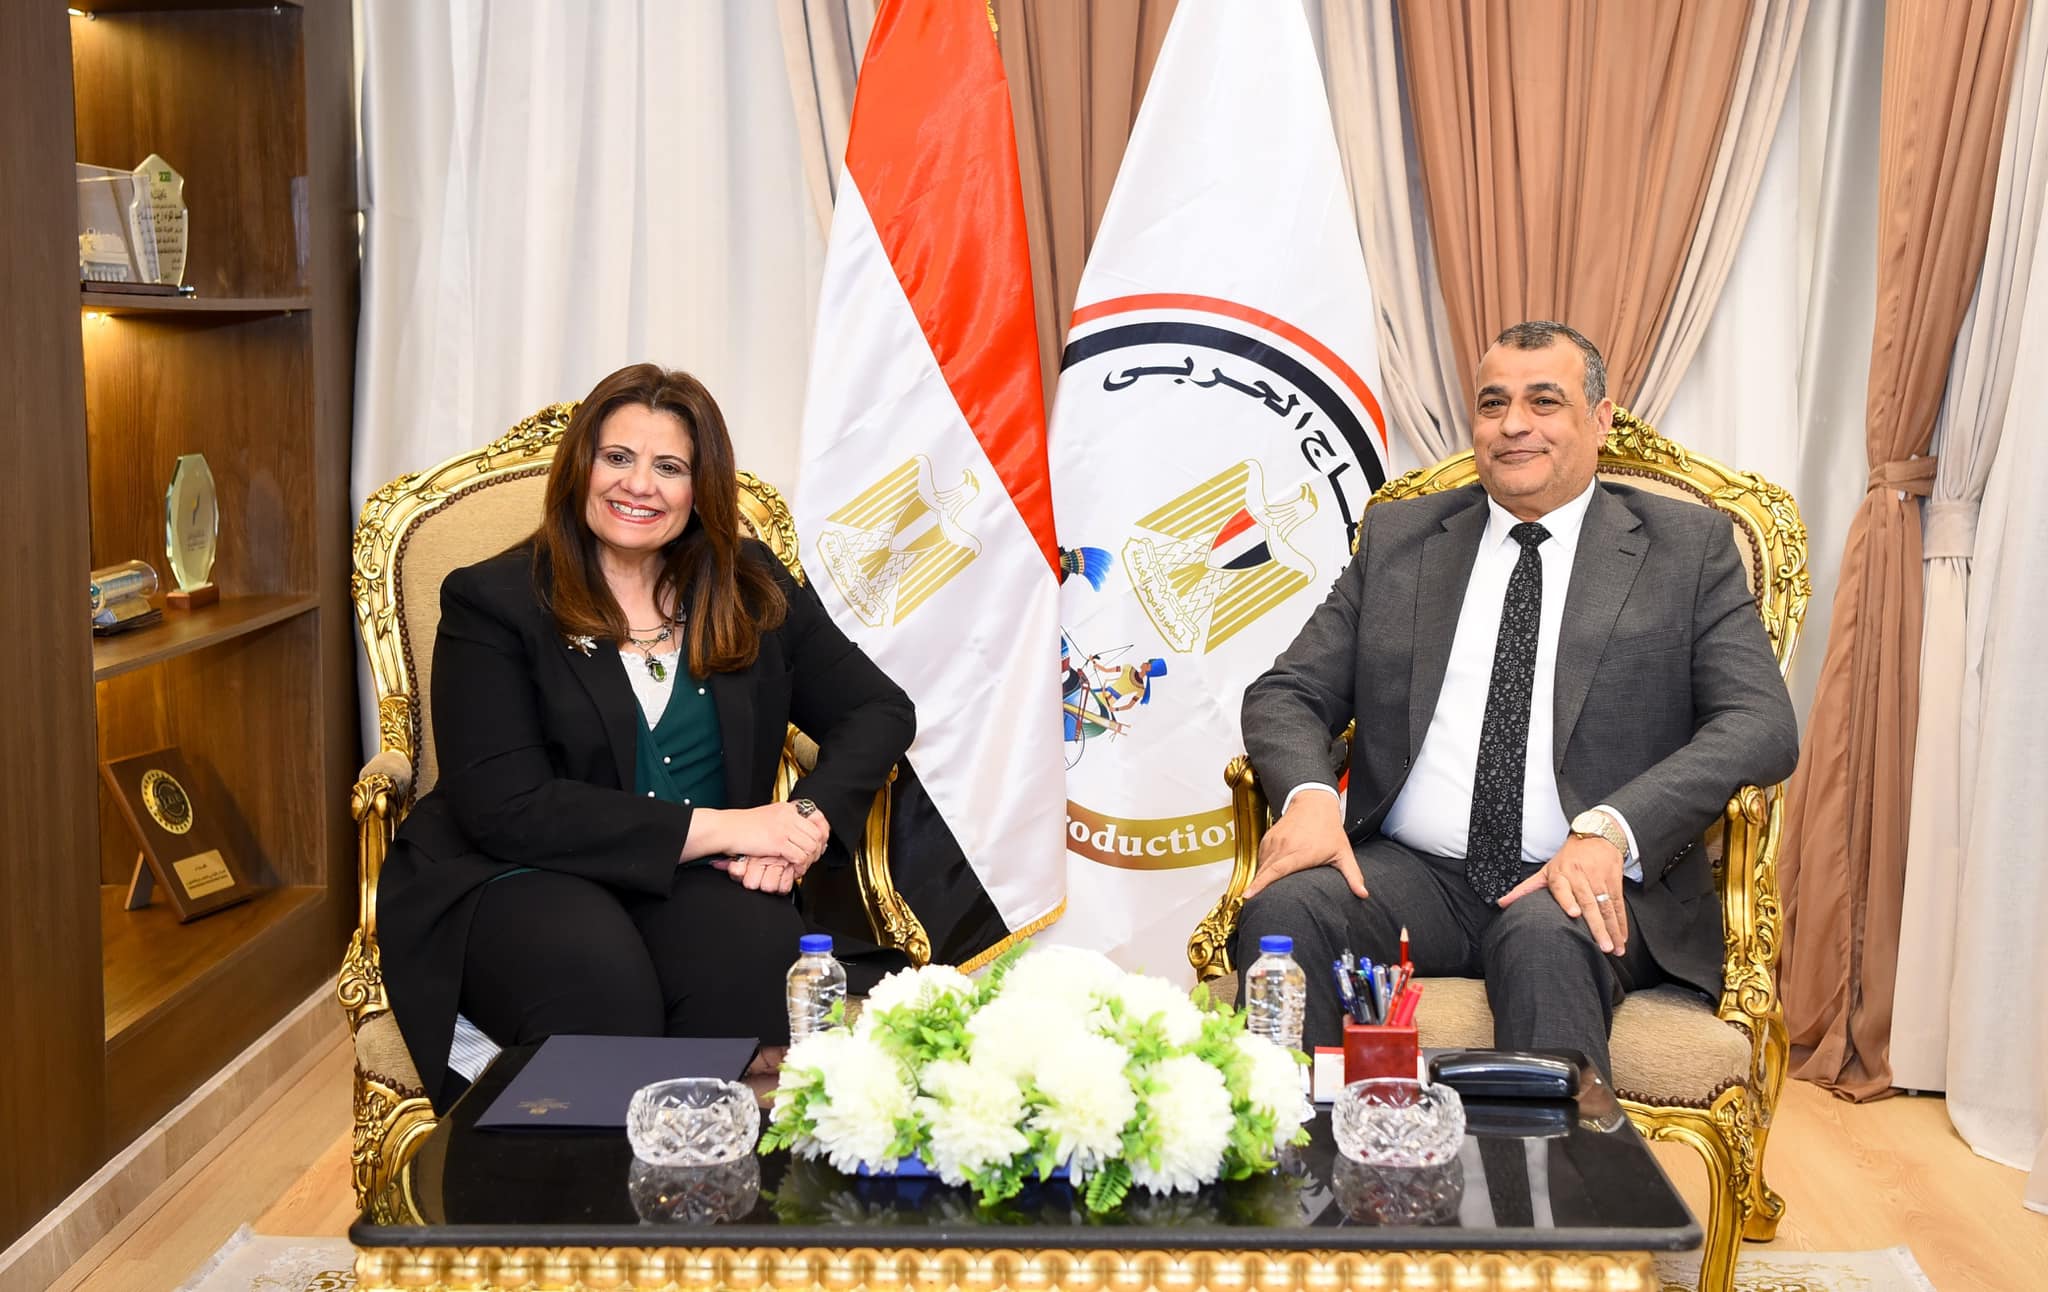 وزير الإنتاج الحربي يستقبل وزيرة الهجرة لبحث التعاون لدعم المصريين بالخارج الراغبين في إقامة مشروعات استثمارية صناعية بمصر